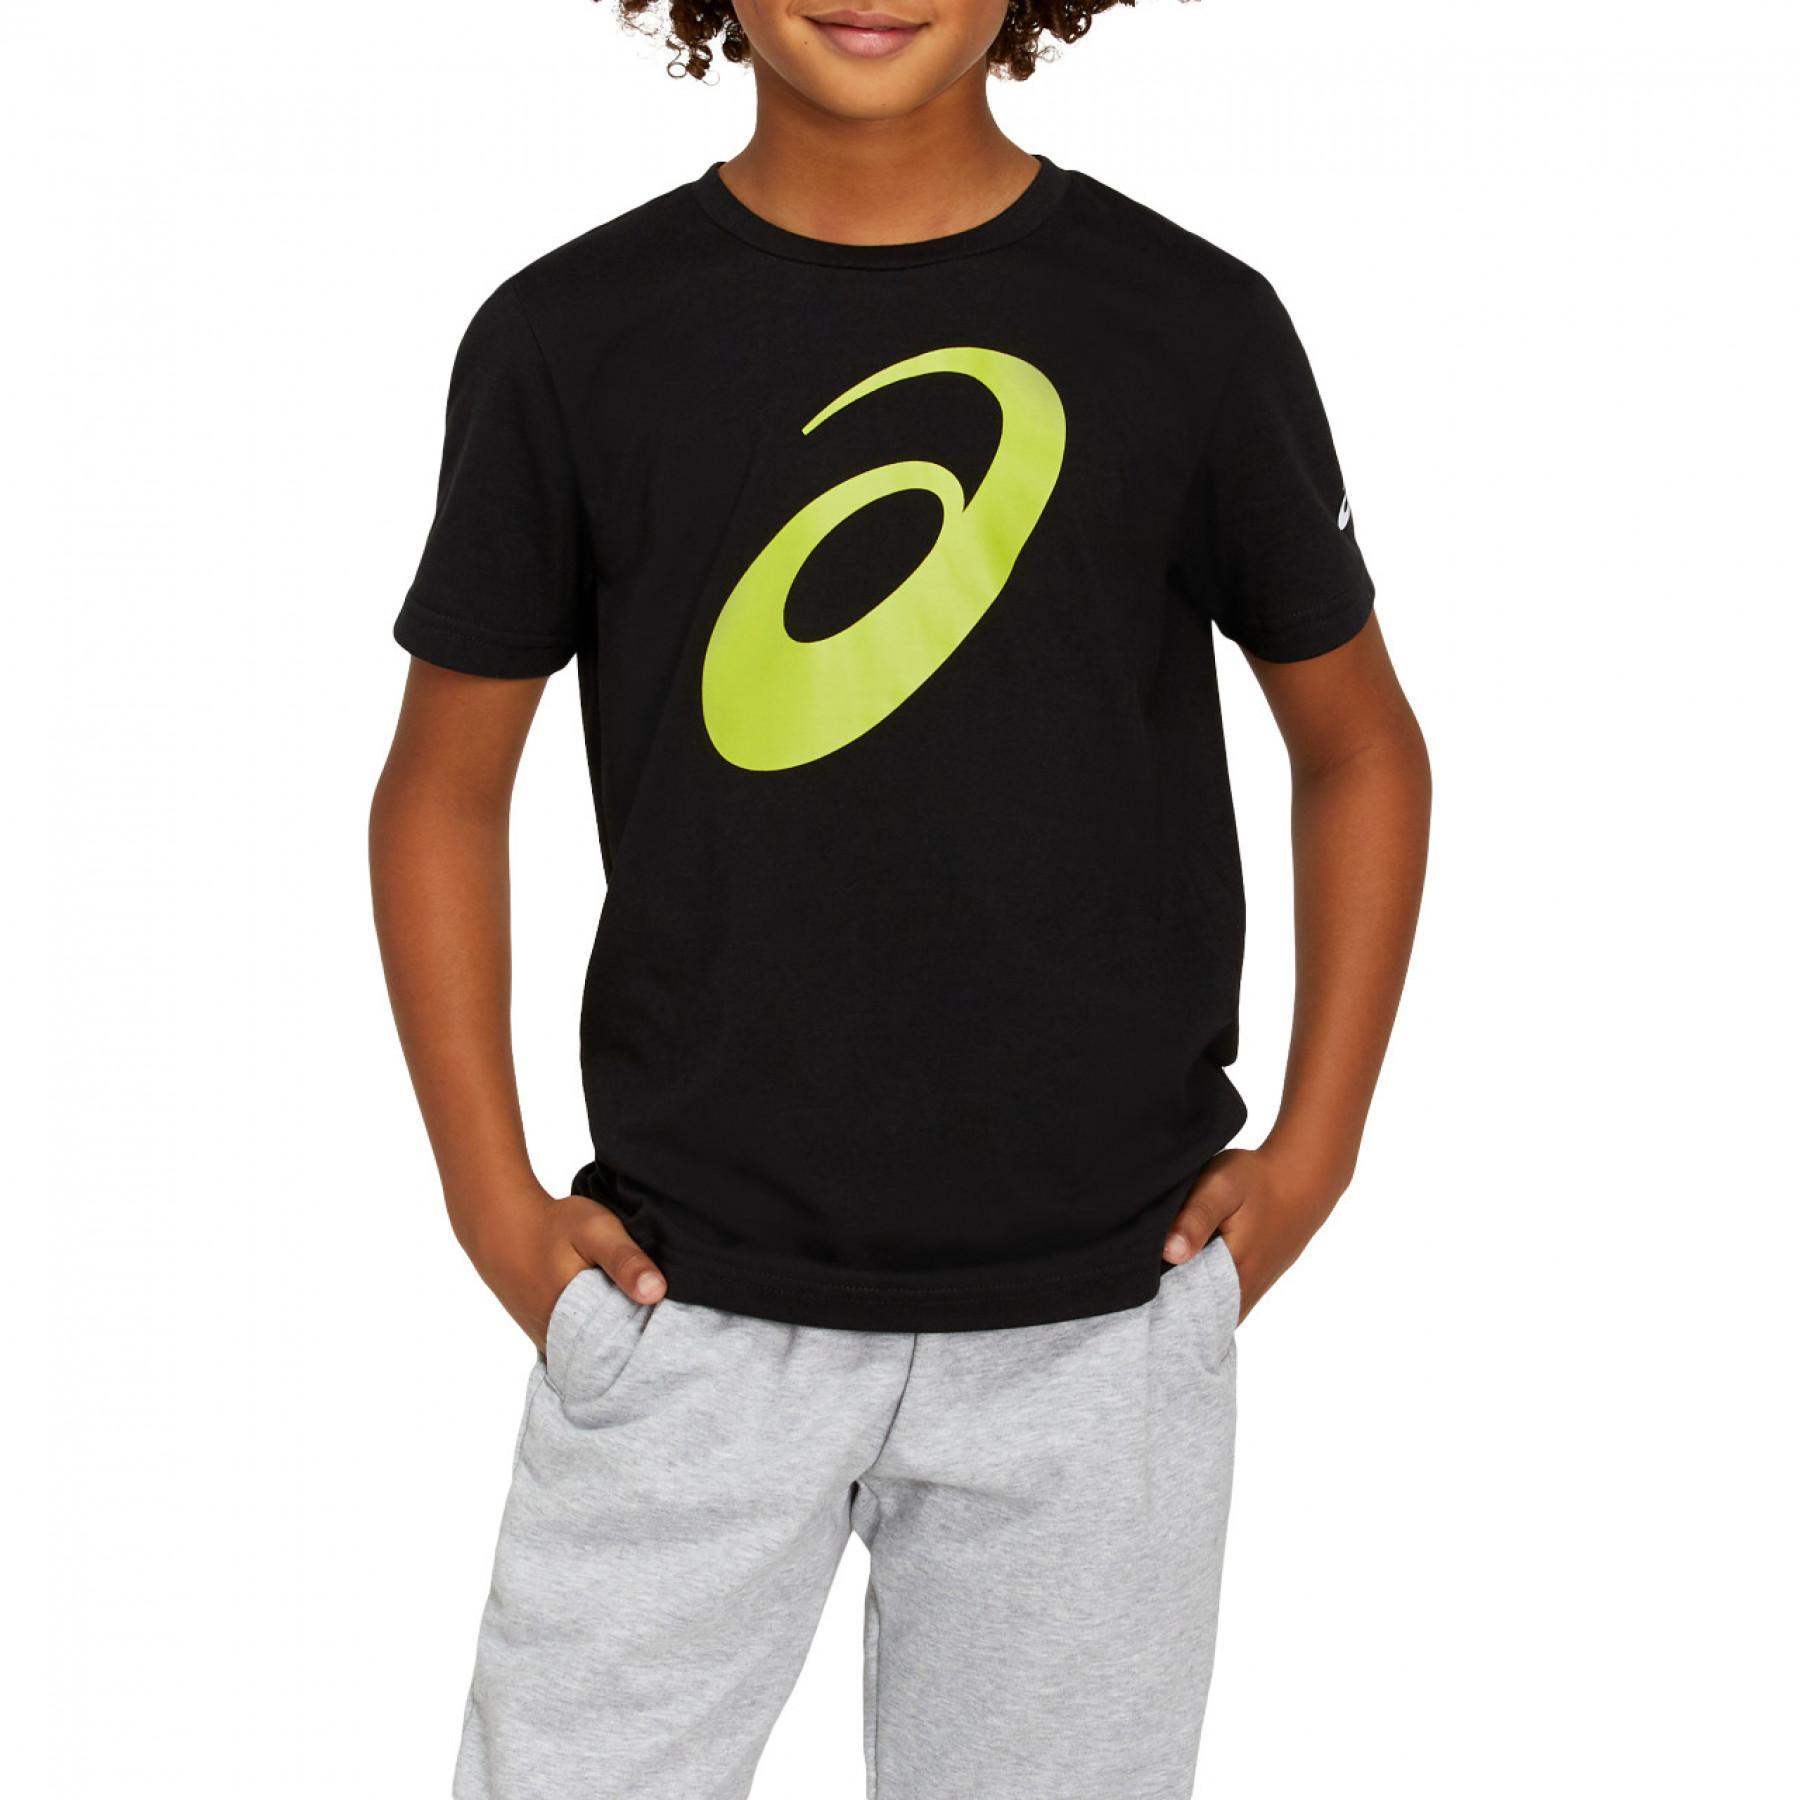 Koszulka dziecięca Asics U Big Spiral